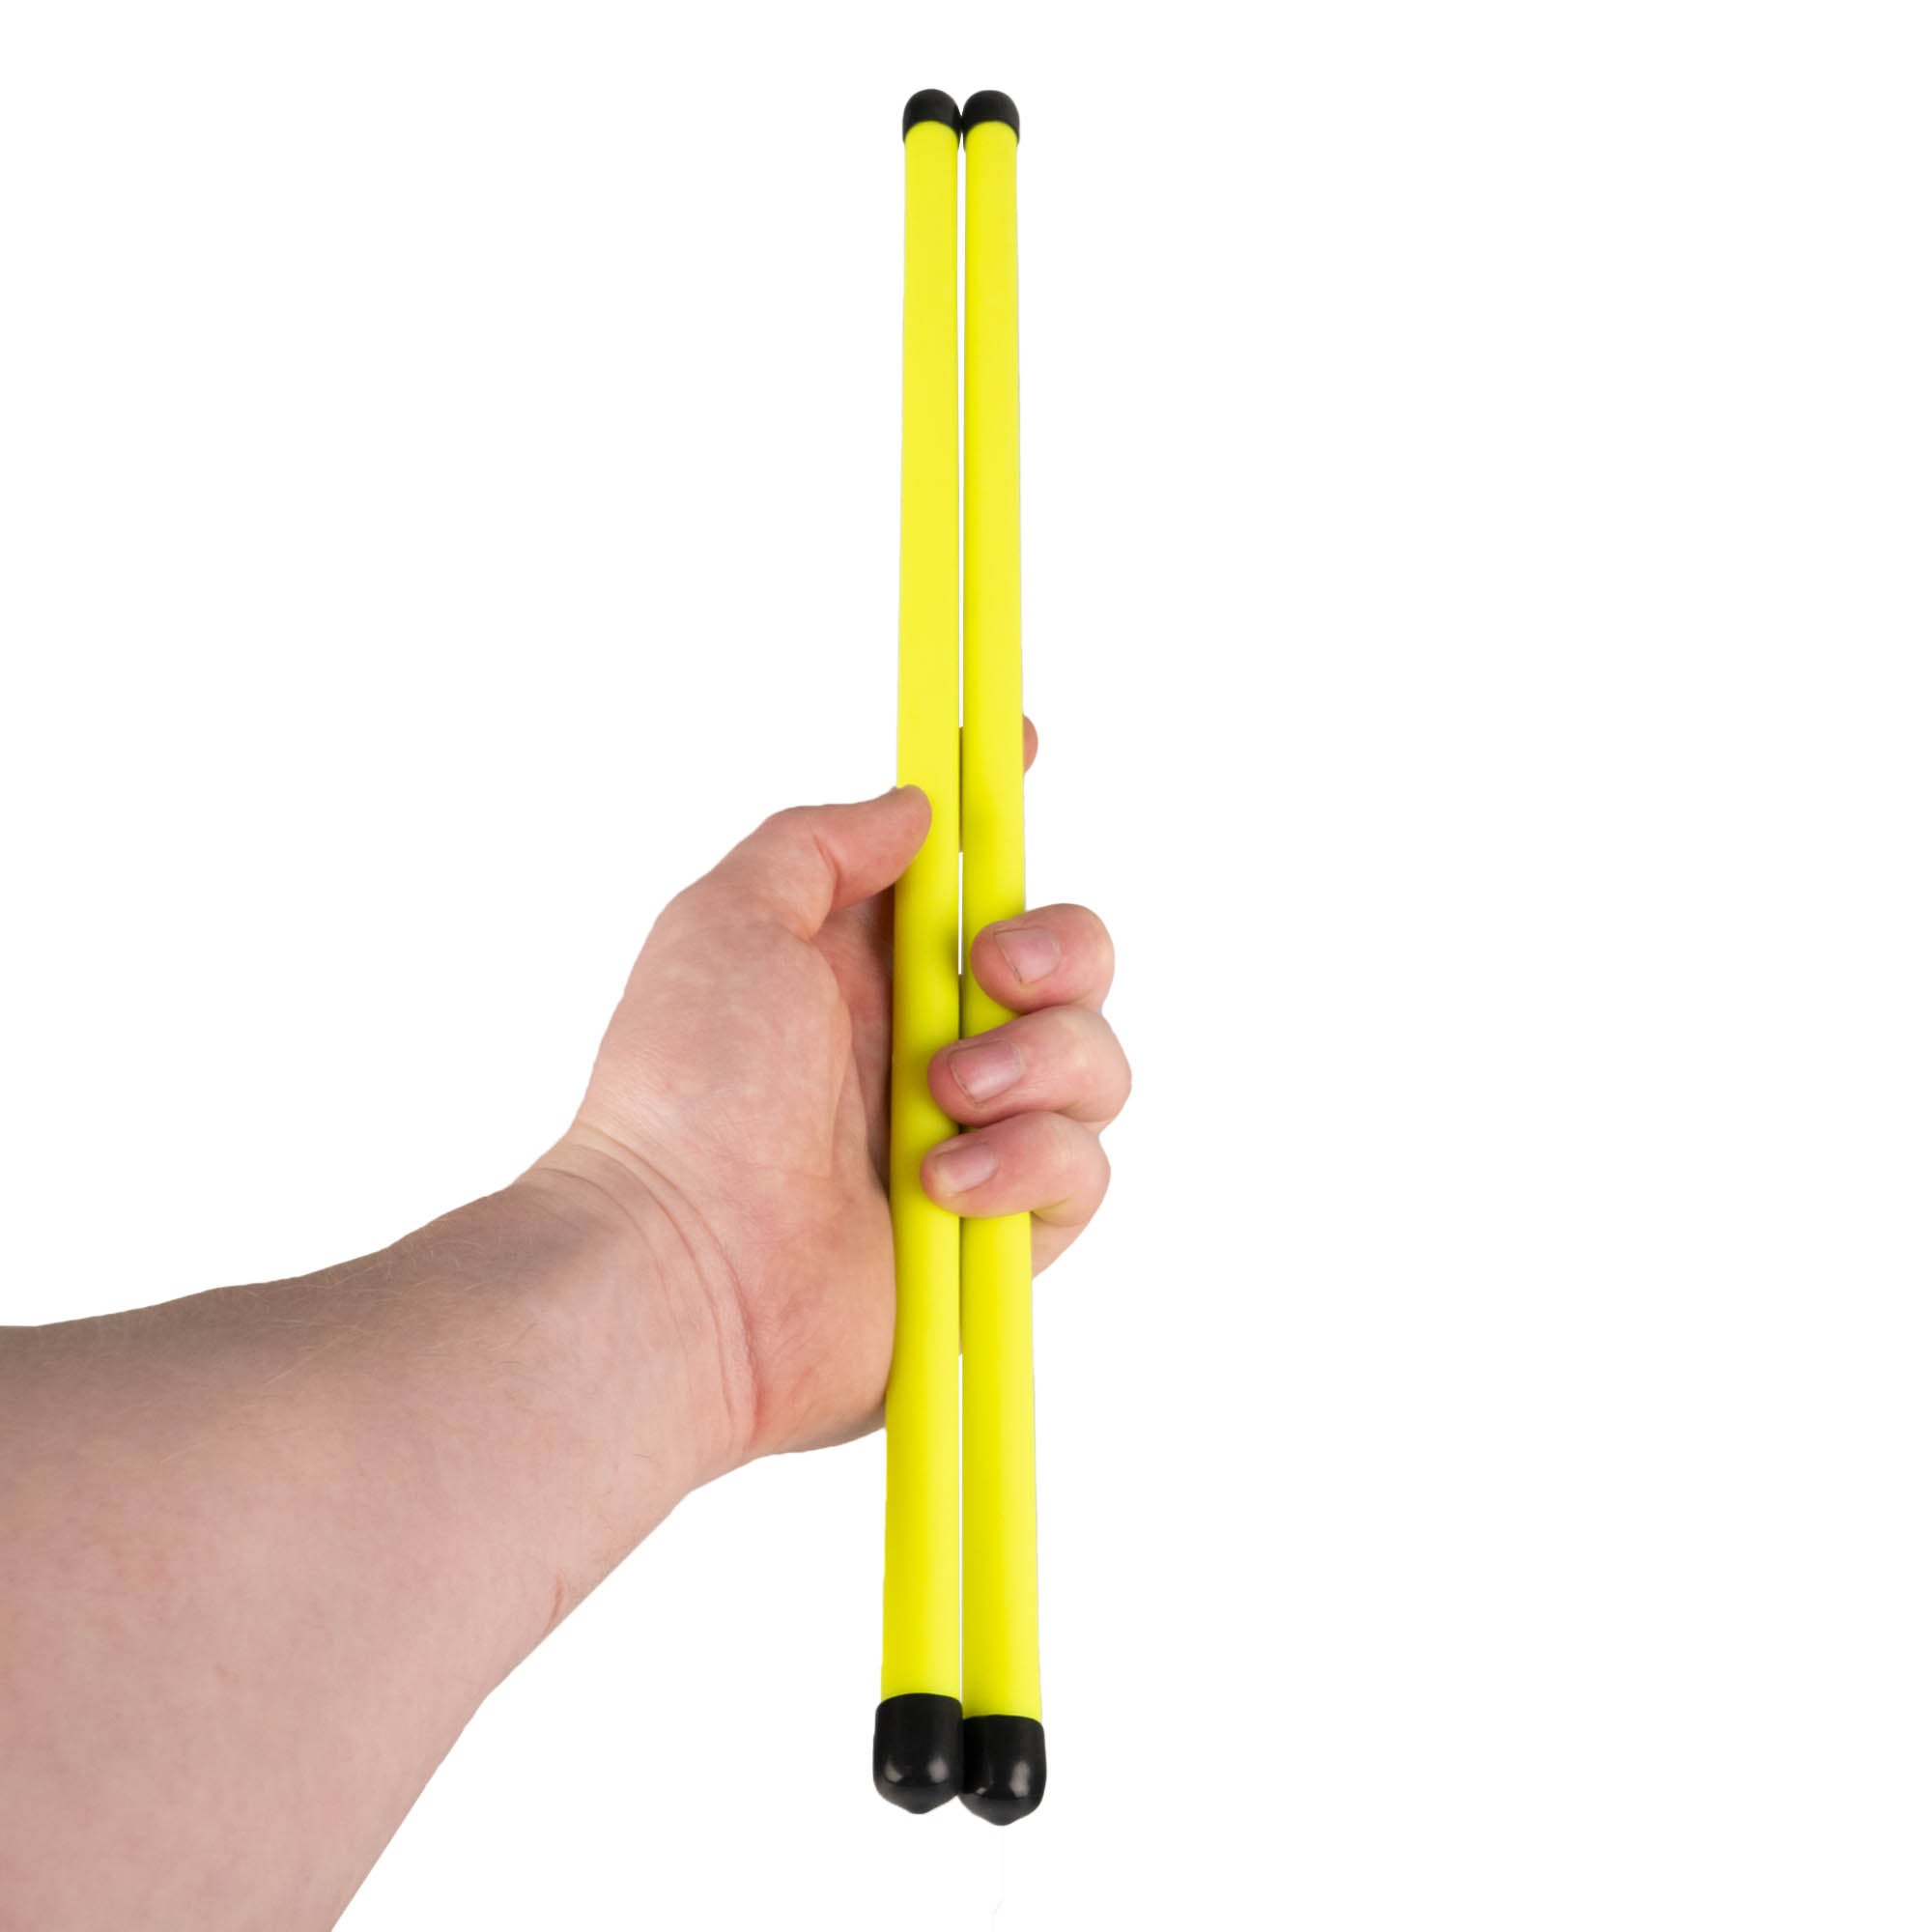 Pair of UV yellow devilstick handsticks in hand